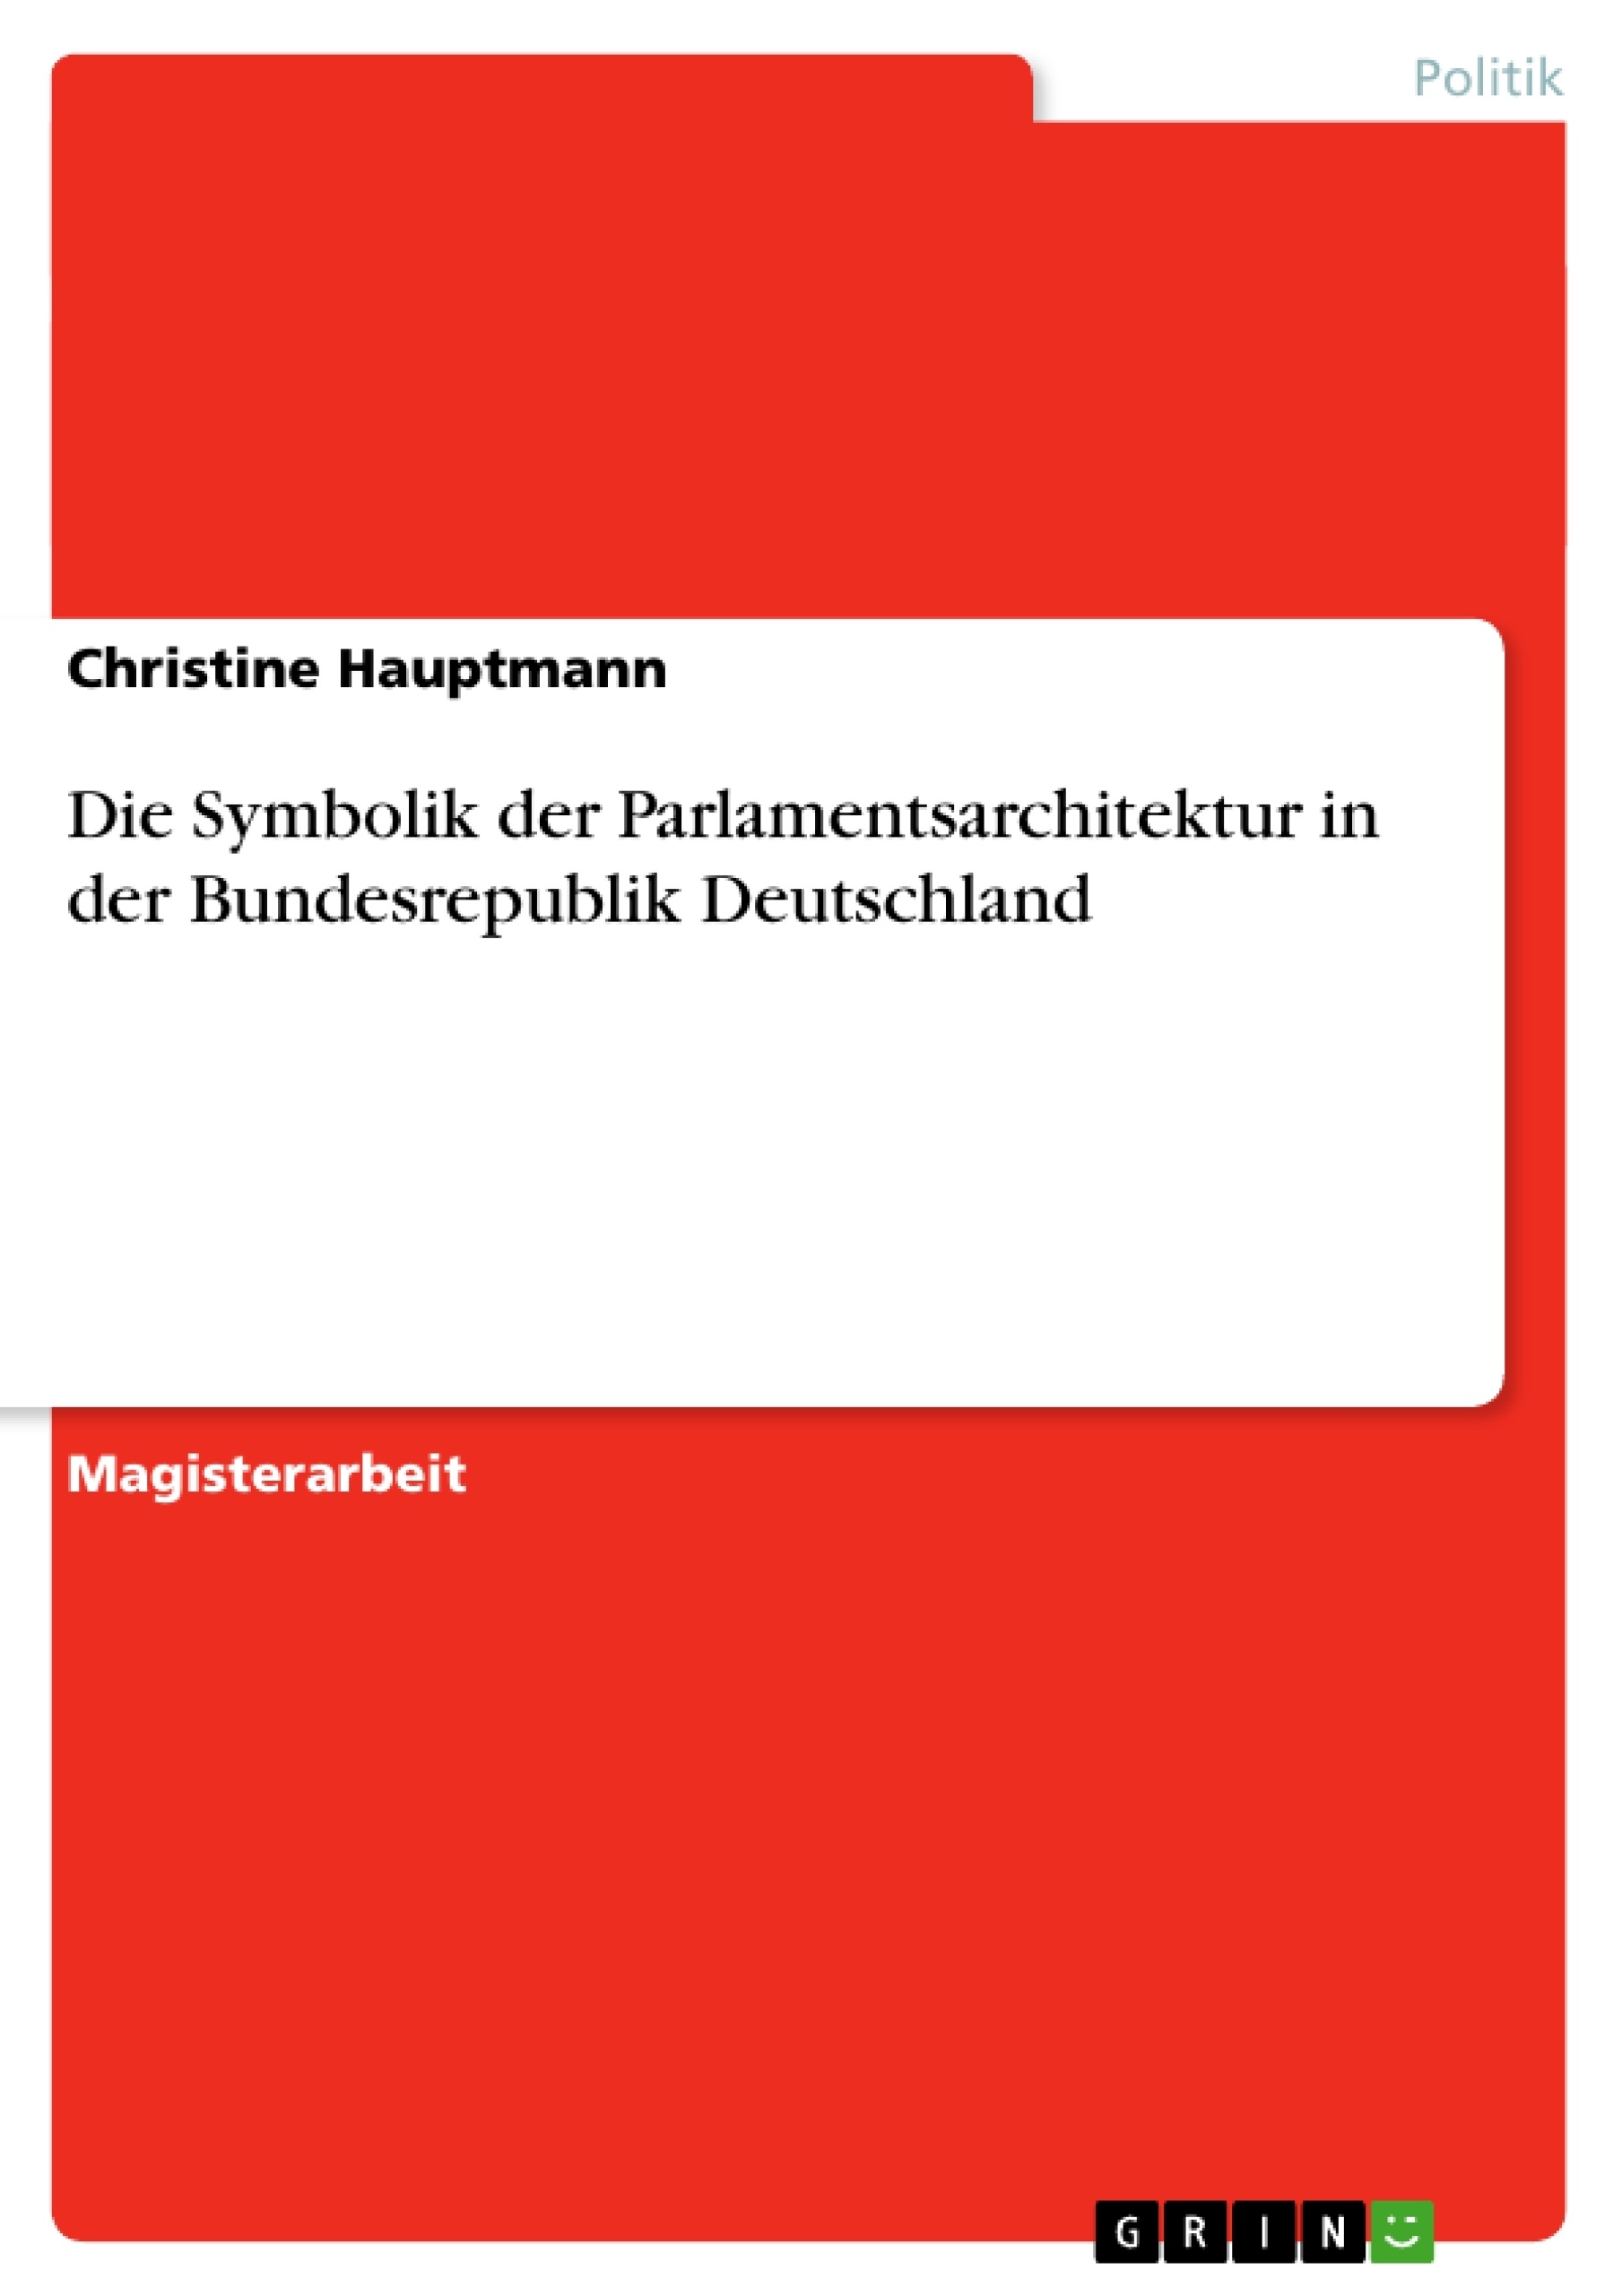 Título: Die Symbolik der Parlamentsarchitektur in der Bundesrepublik Deutschland